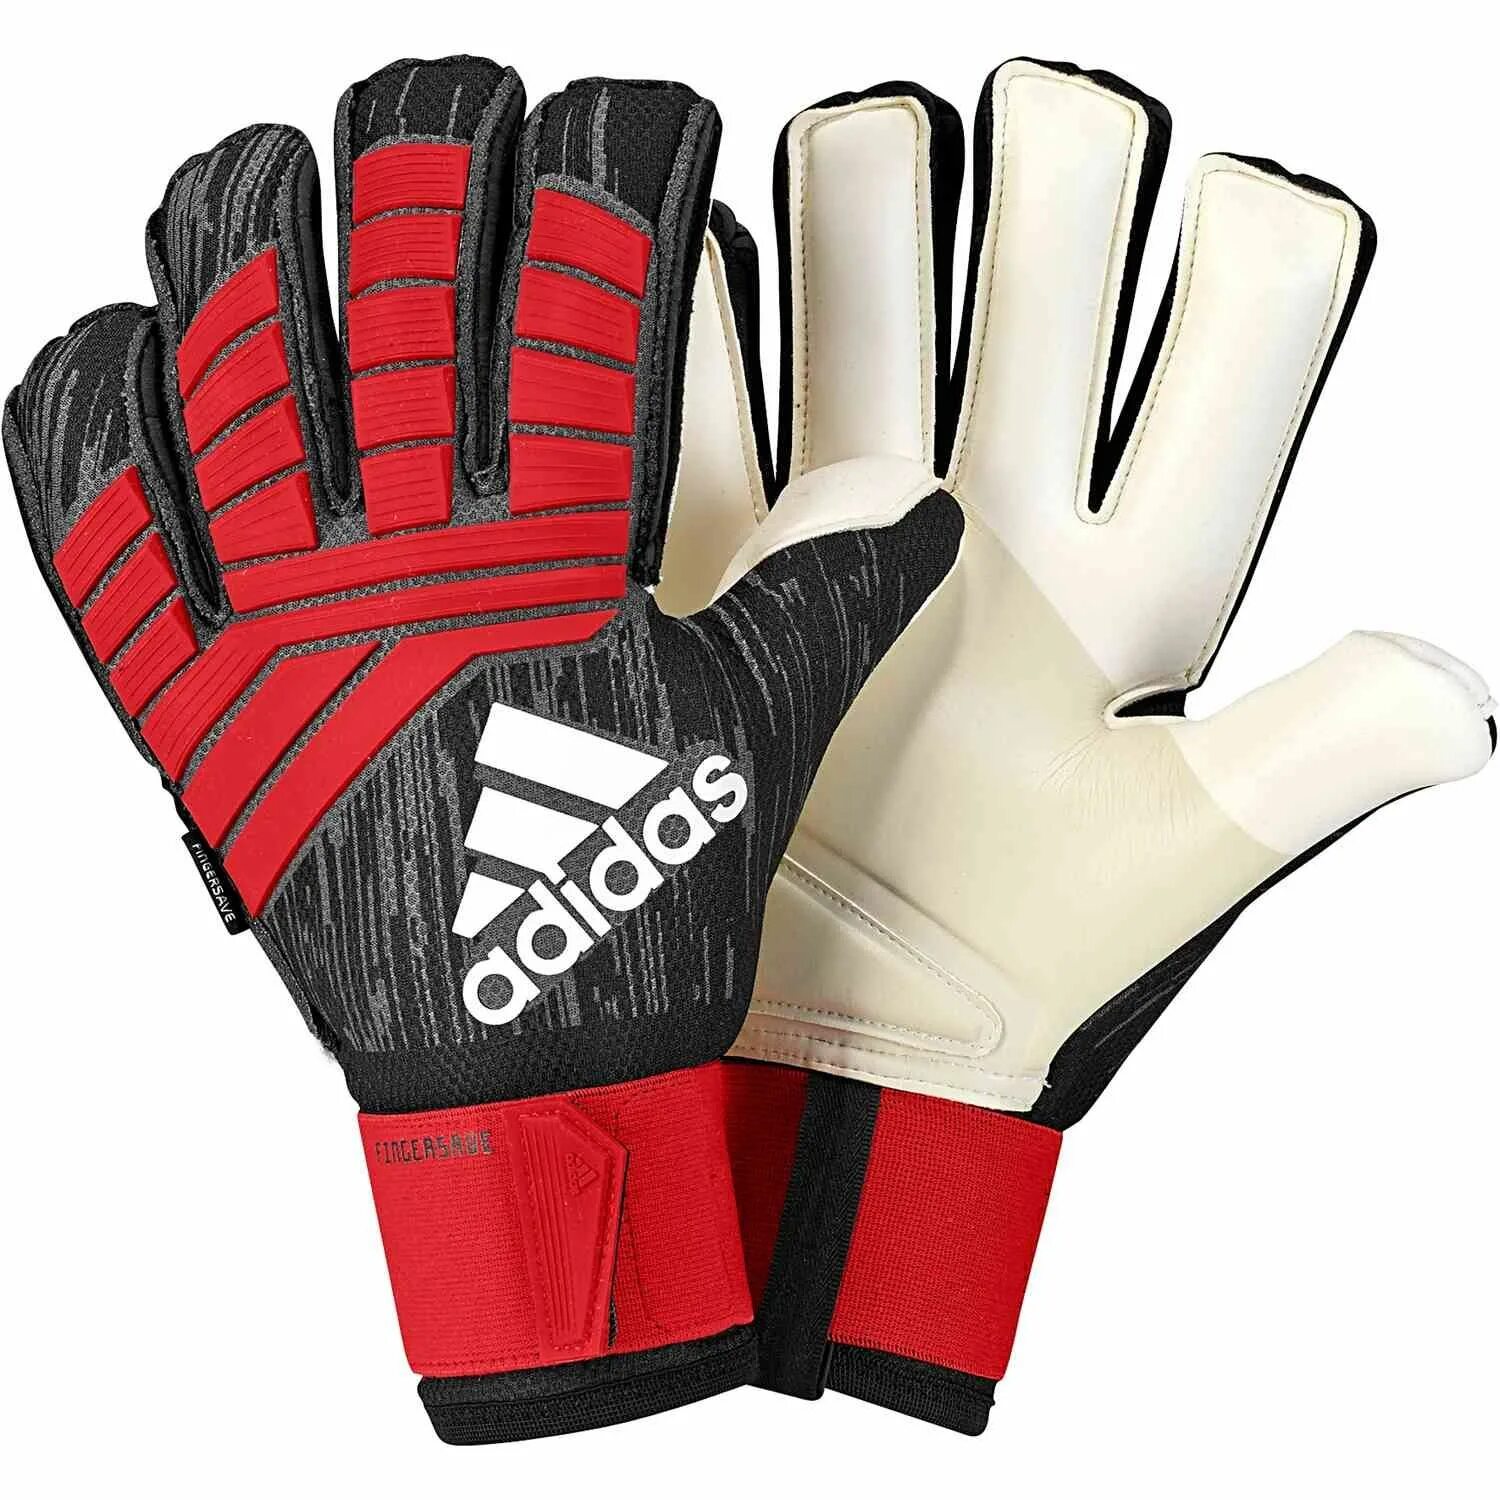 Купить перчатки вратарские футбольные. Adidas Predator Pro goalkeeper Gloves. Перчатки адидас предатор. Adidas Predator Fingersave. Вратарские перчатки Predator Pro Fingersave.